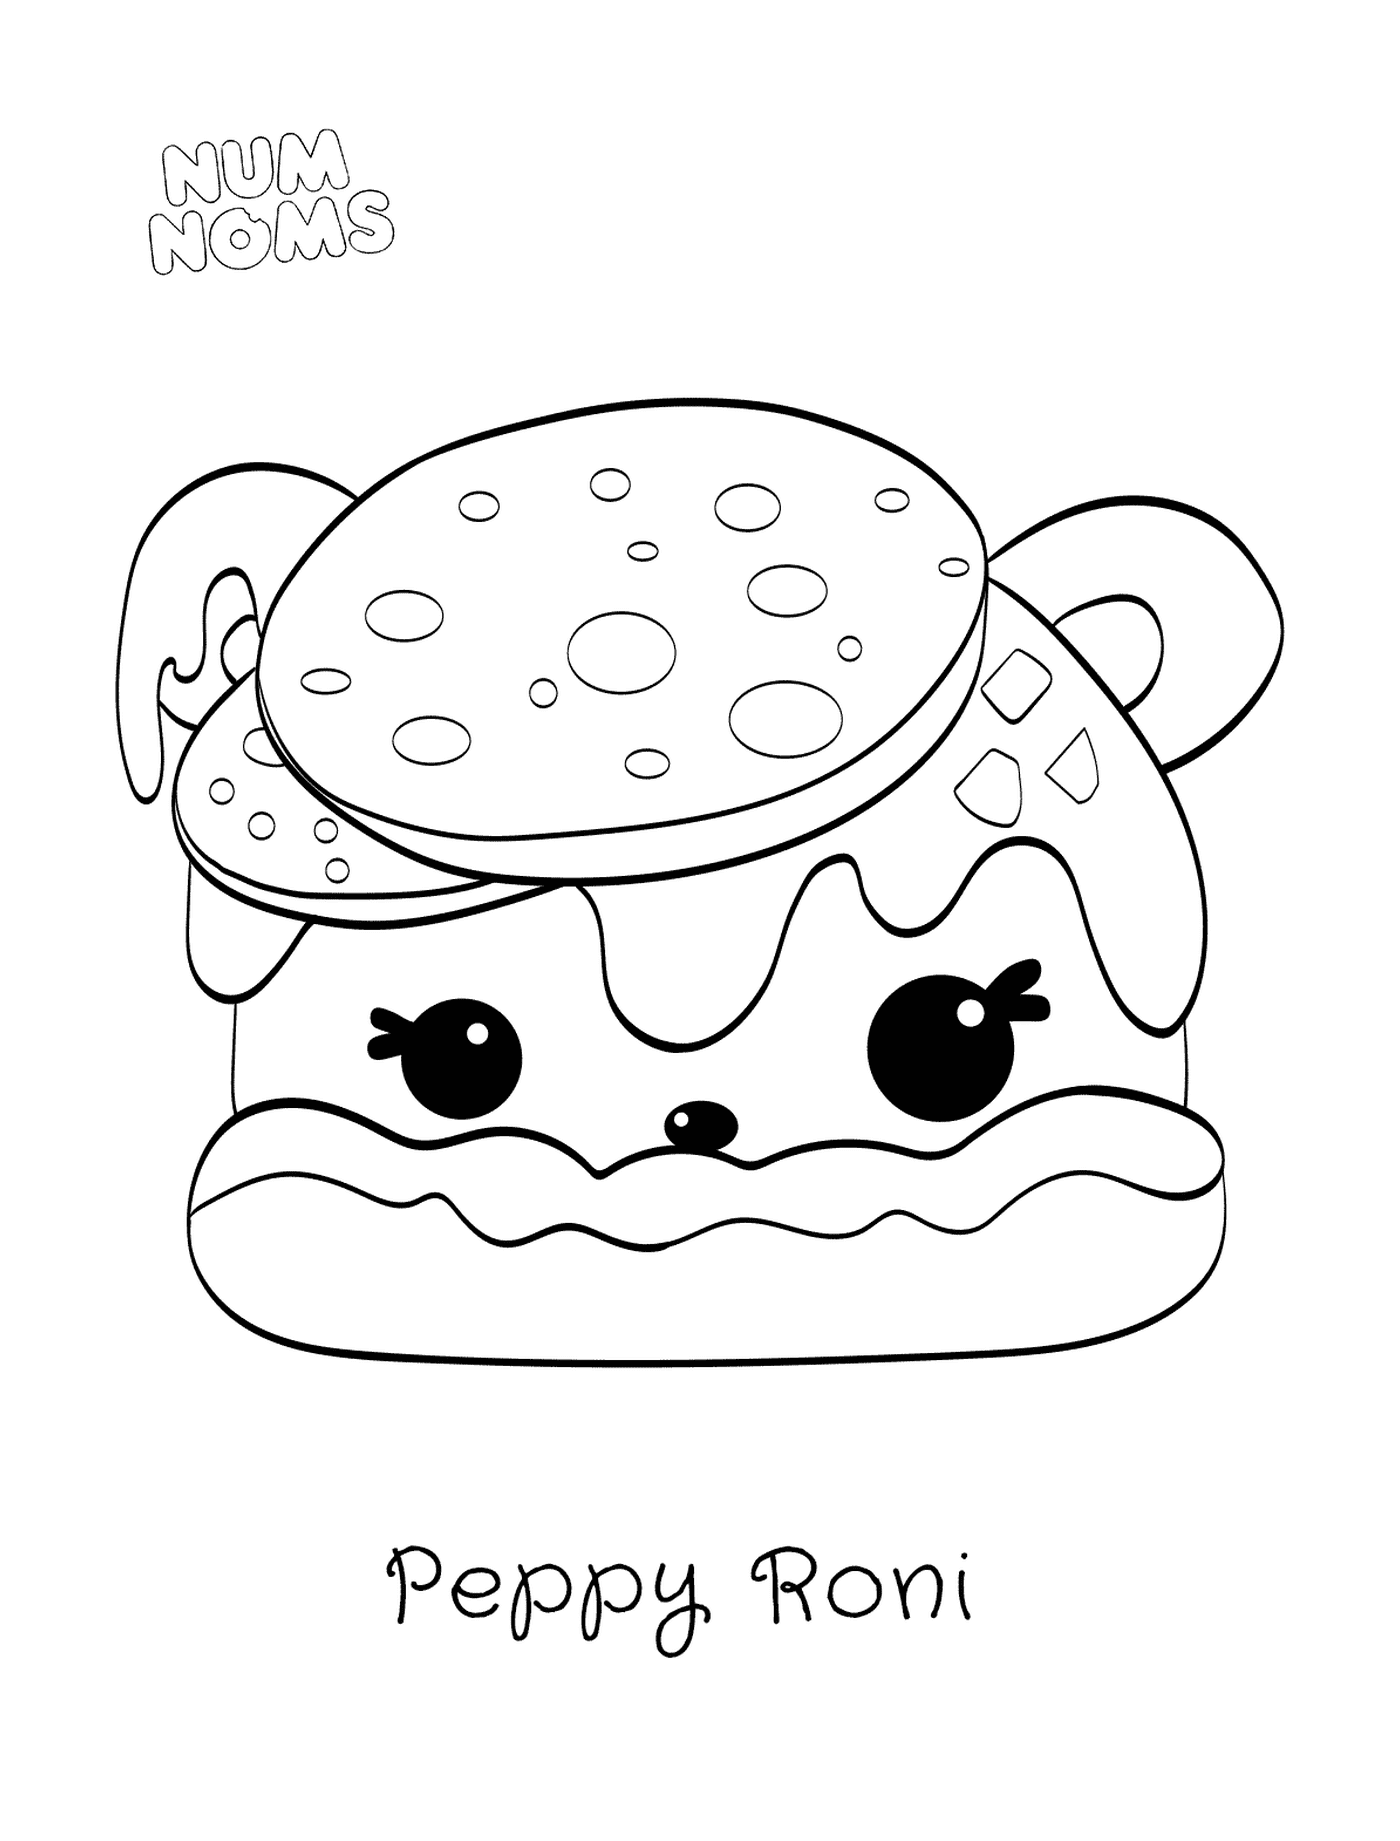  Pizza Peppy Roni por Nombres Núm 